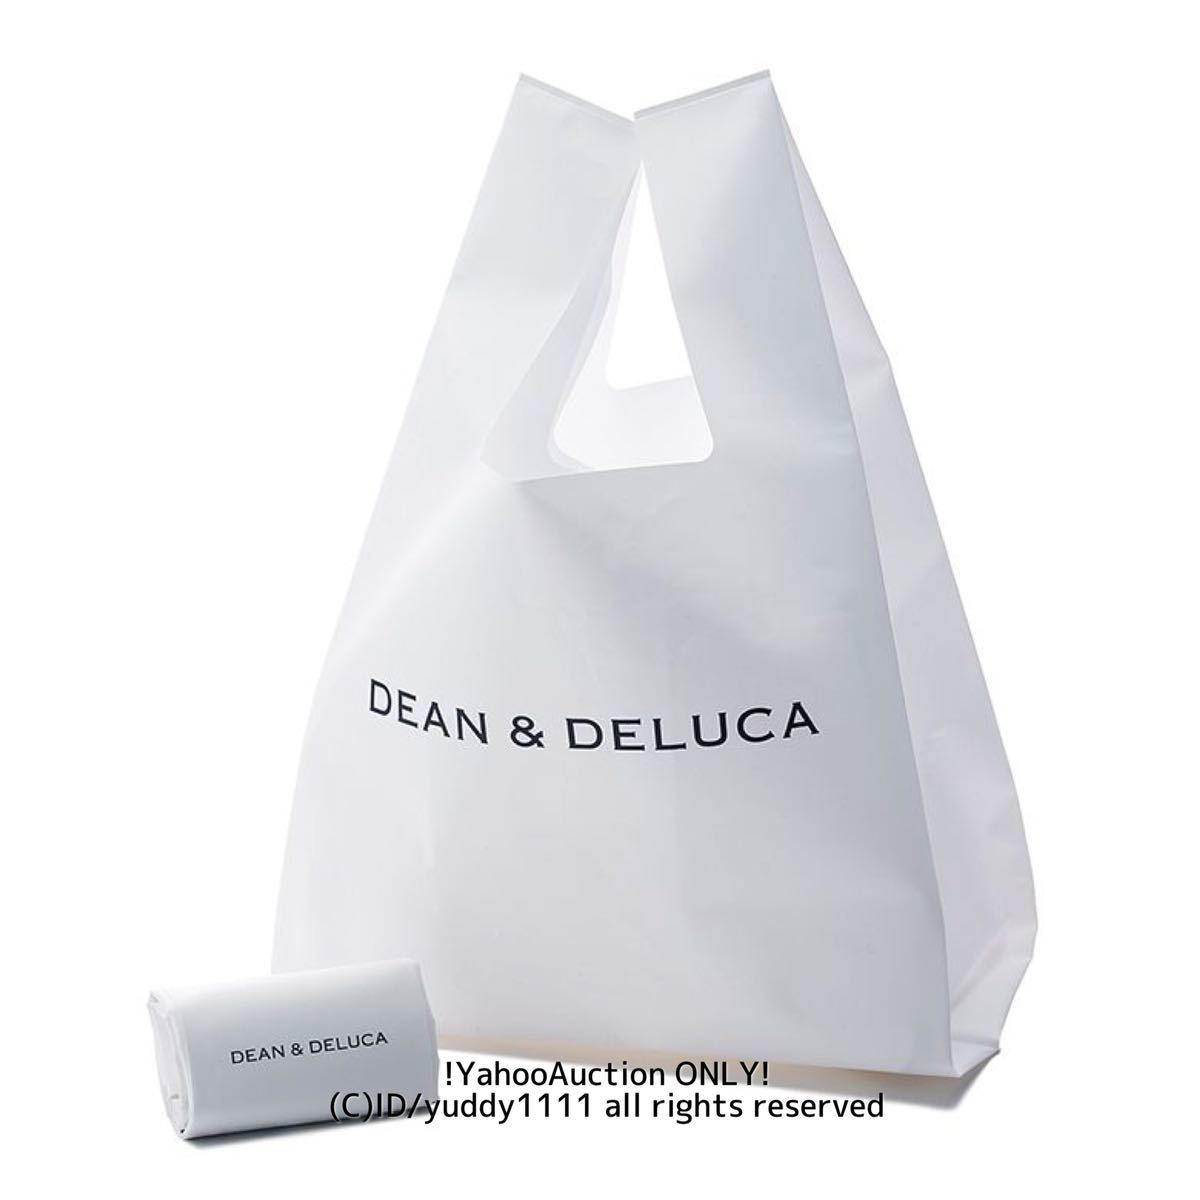  новый товар нераспечатанный DEAN & DELUCA Dean and Dell -ka Minimum эко-сумка белый быстрое решение 